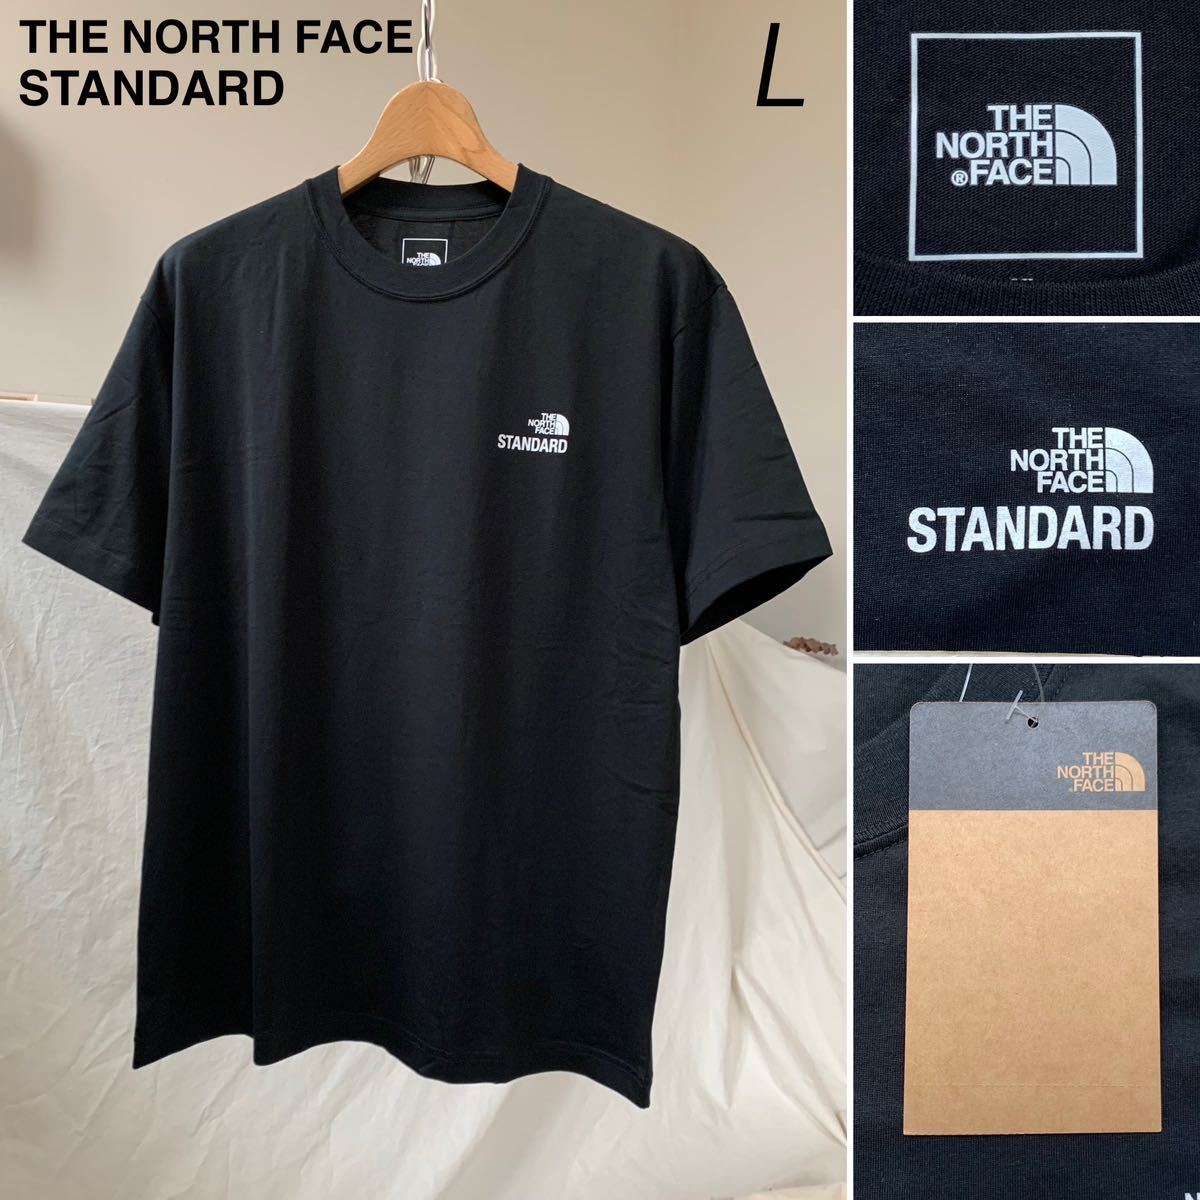 Yahoo!オークション -「the north face standard tシャツ」の落札相場 